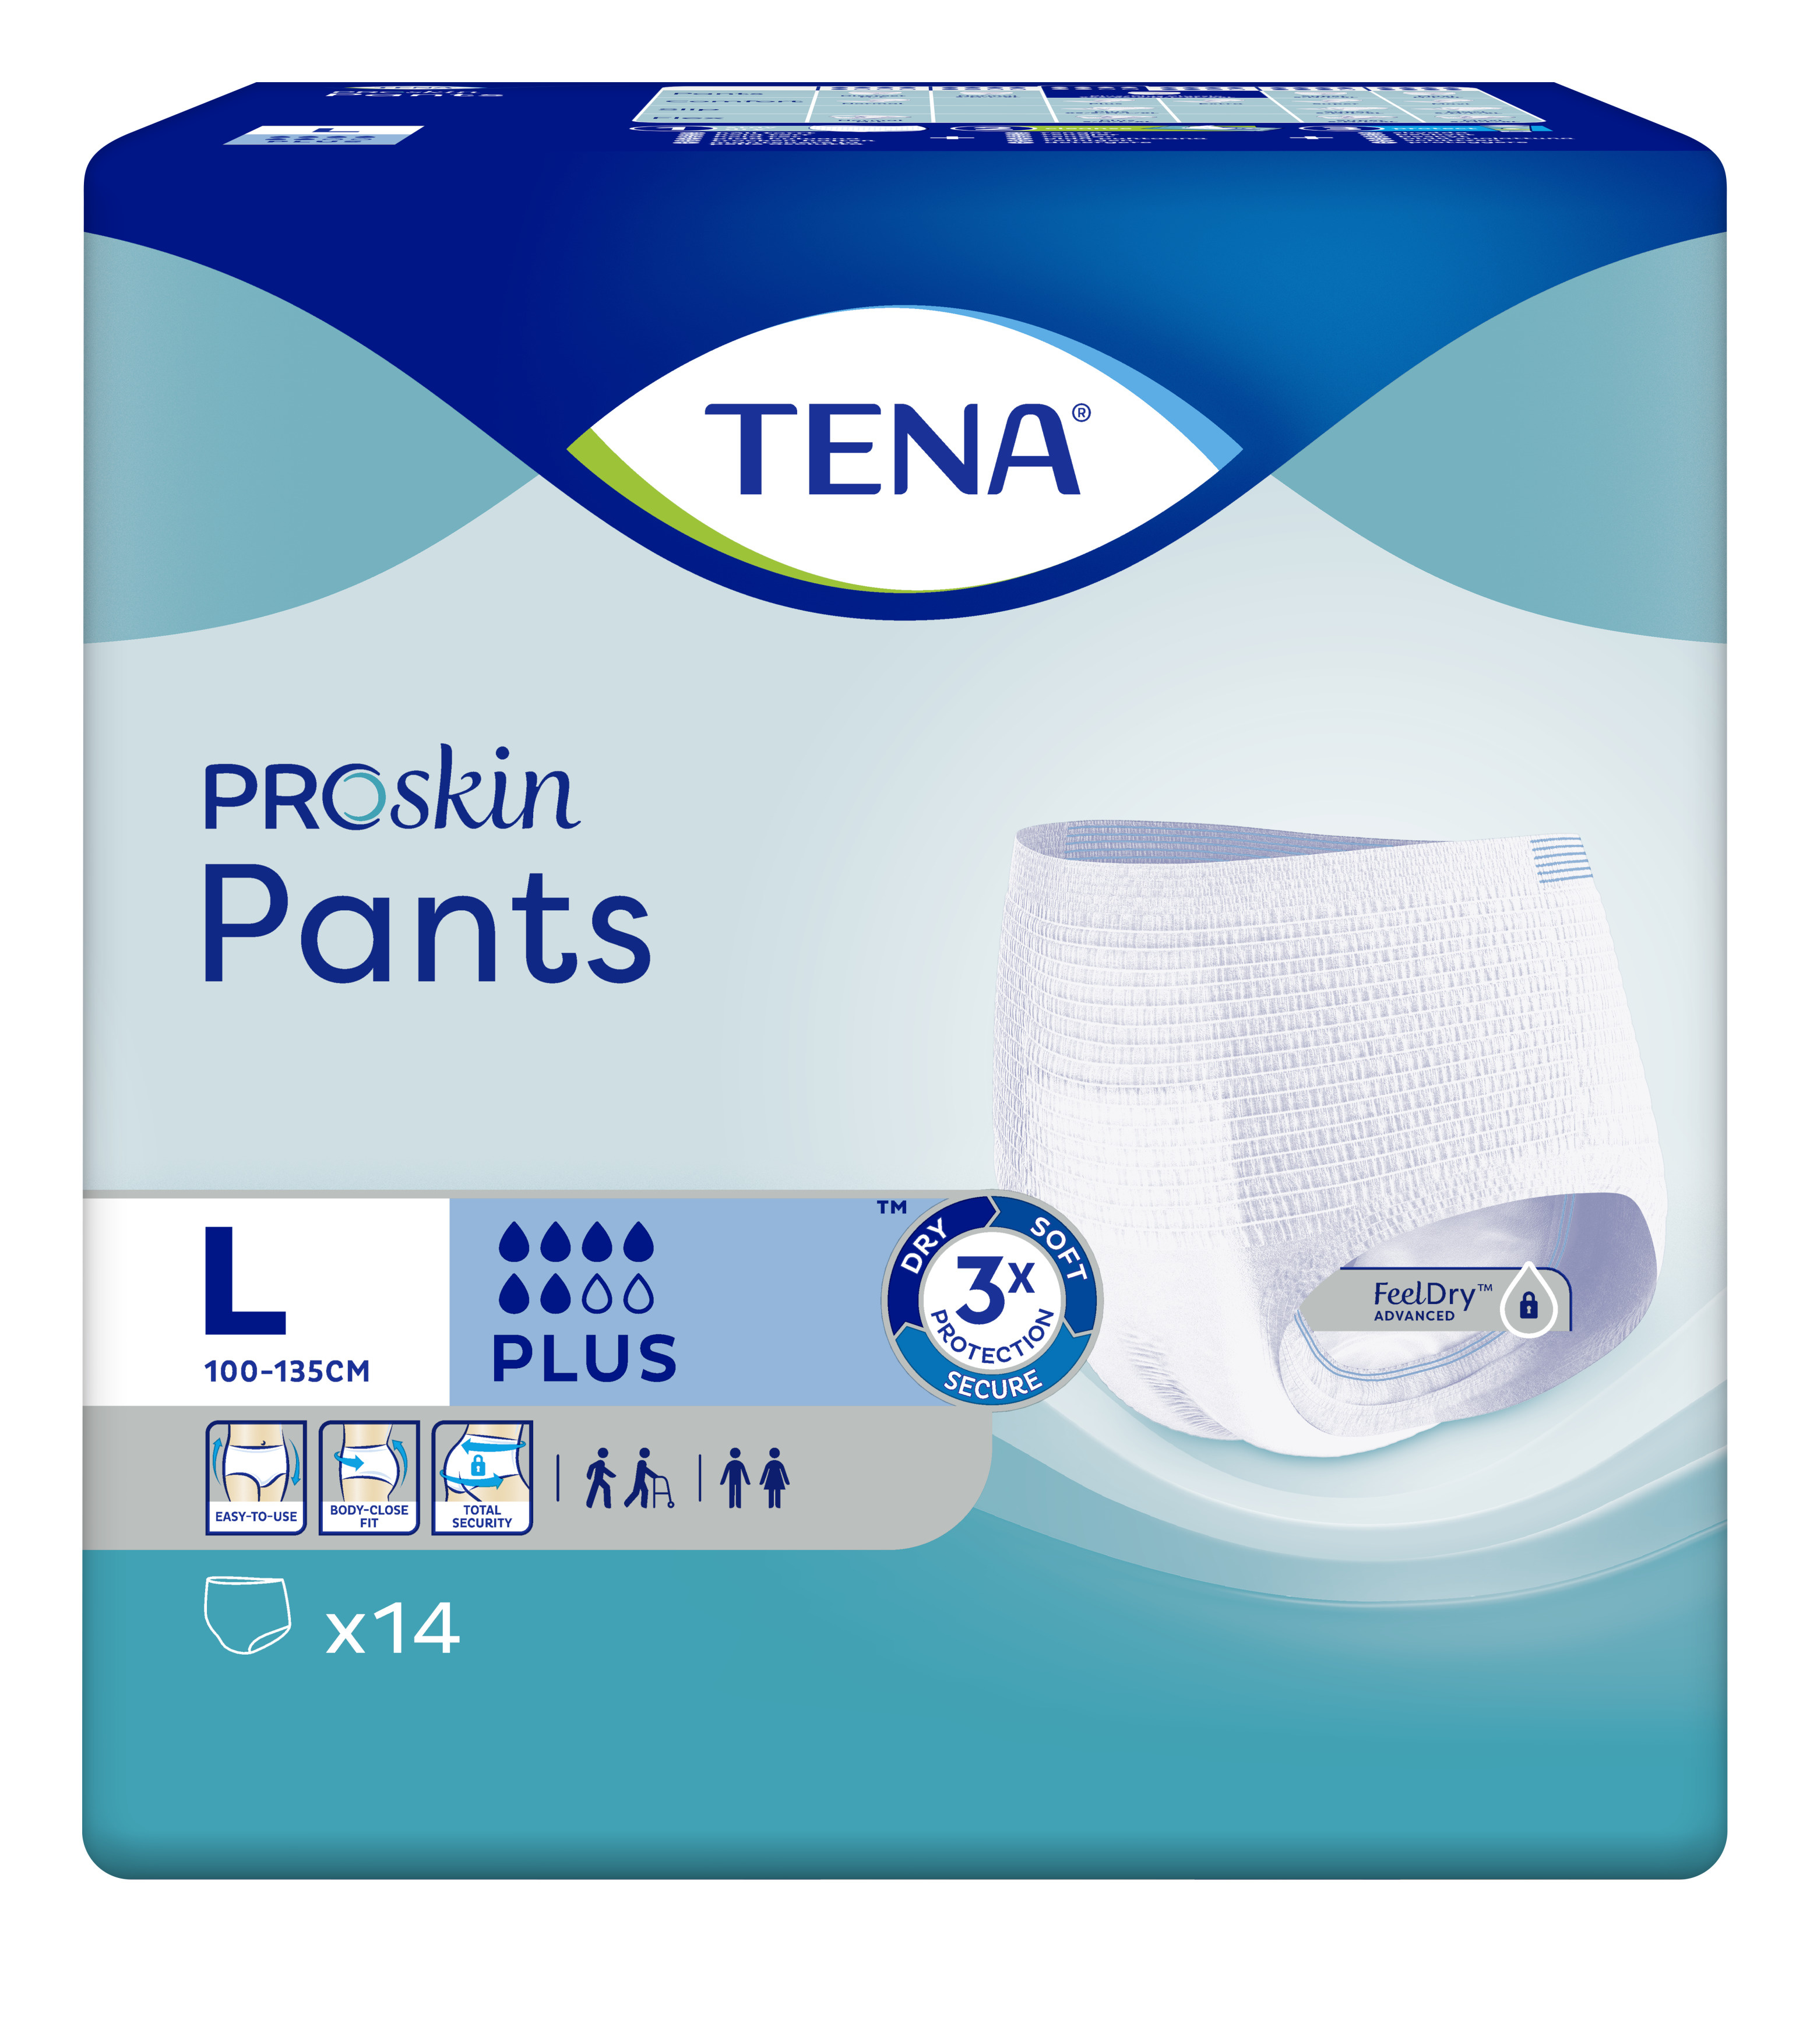 TENA PROskin Pants Plus Large image 0